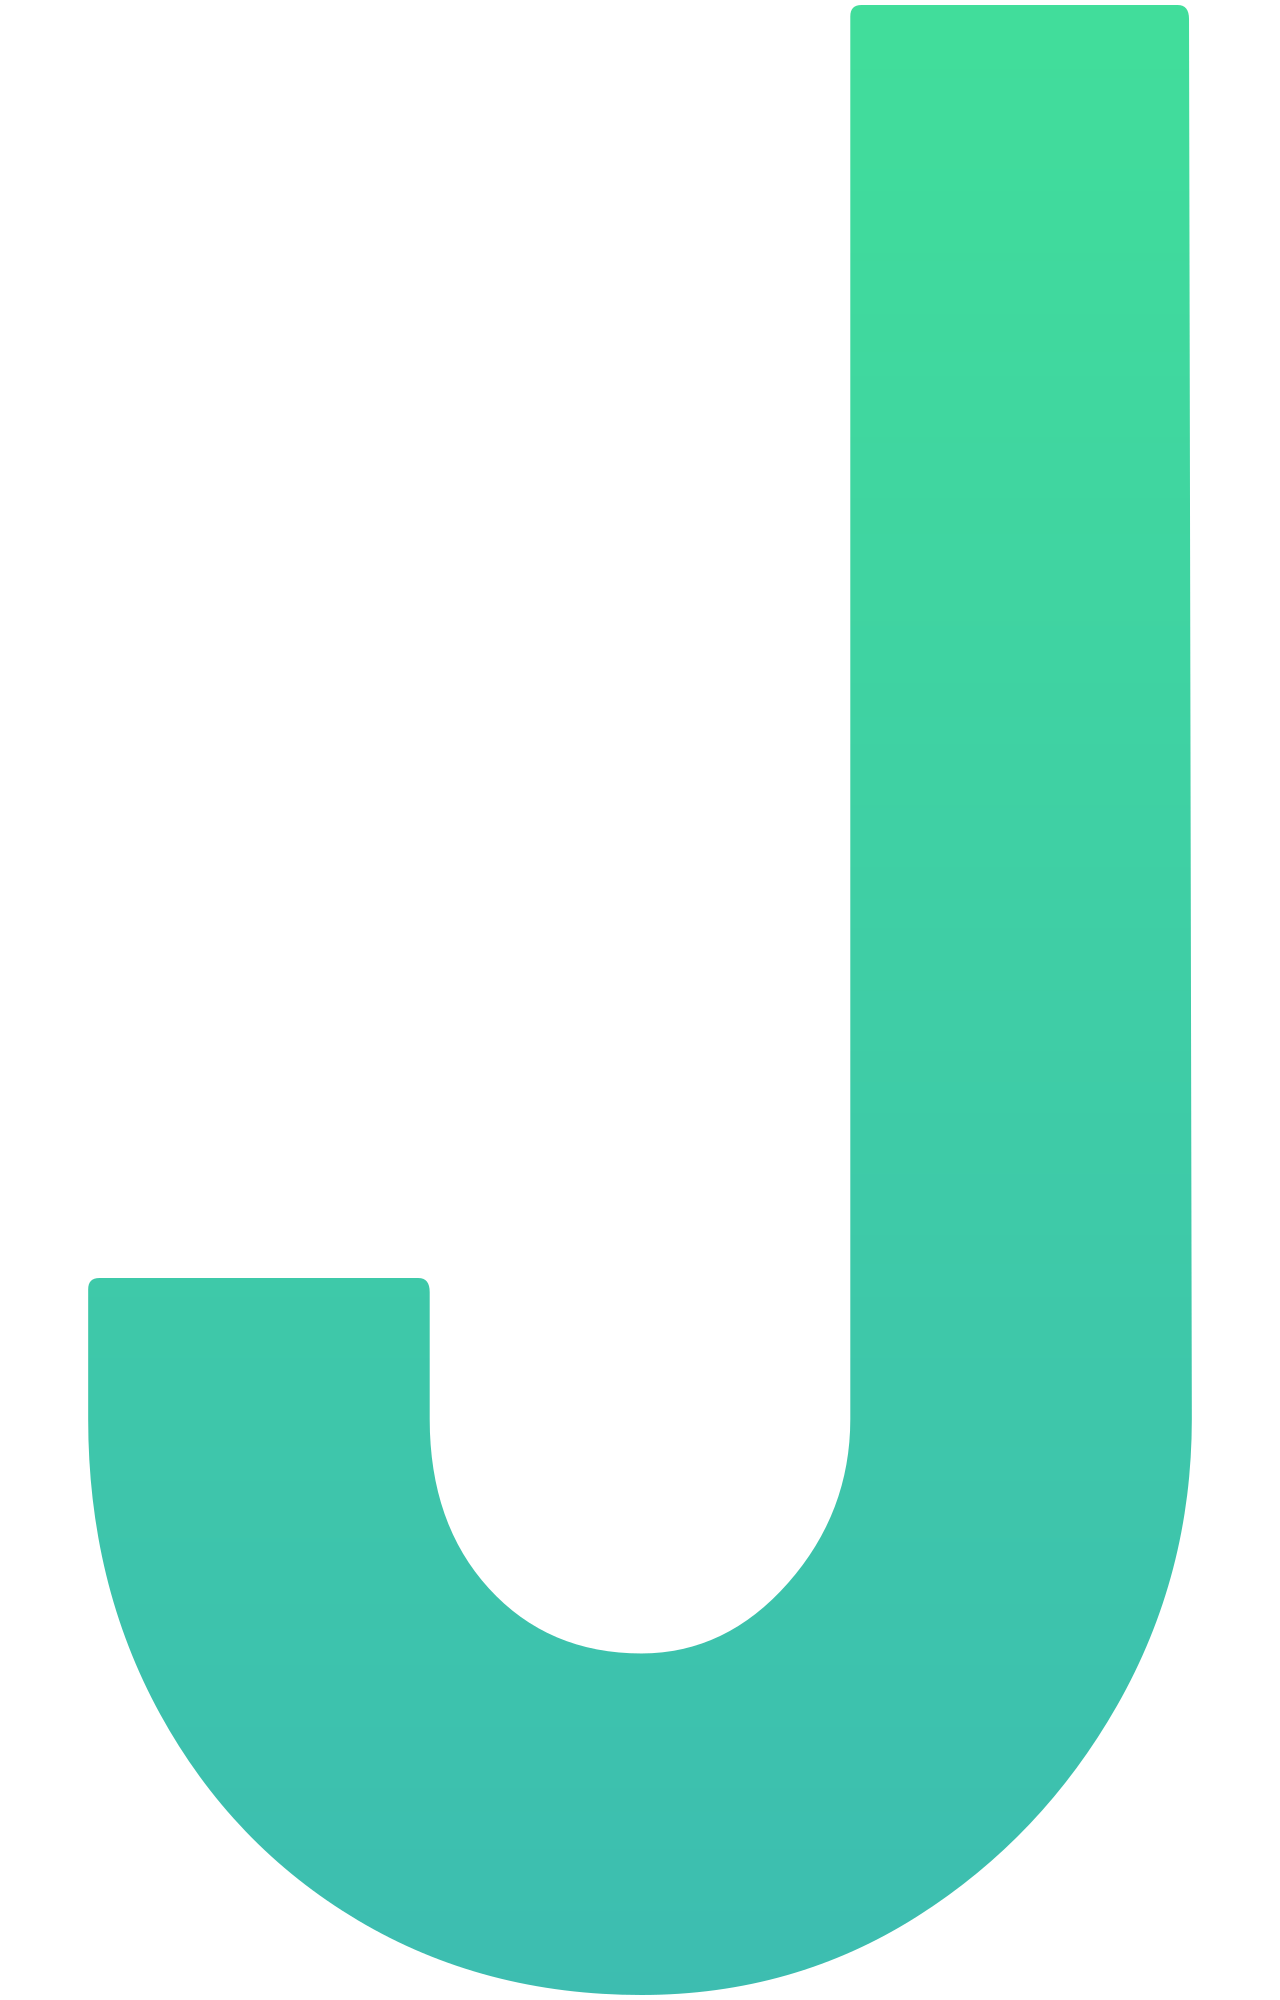 J's logo